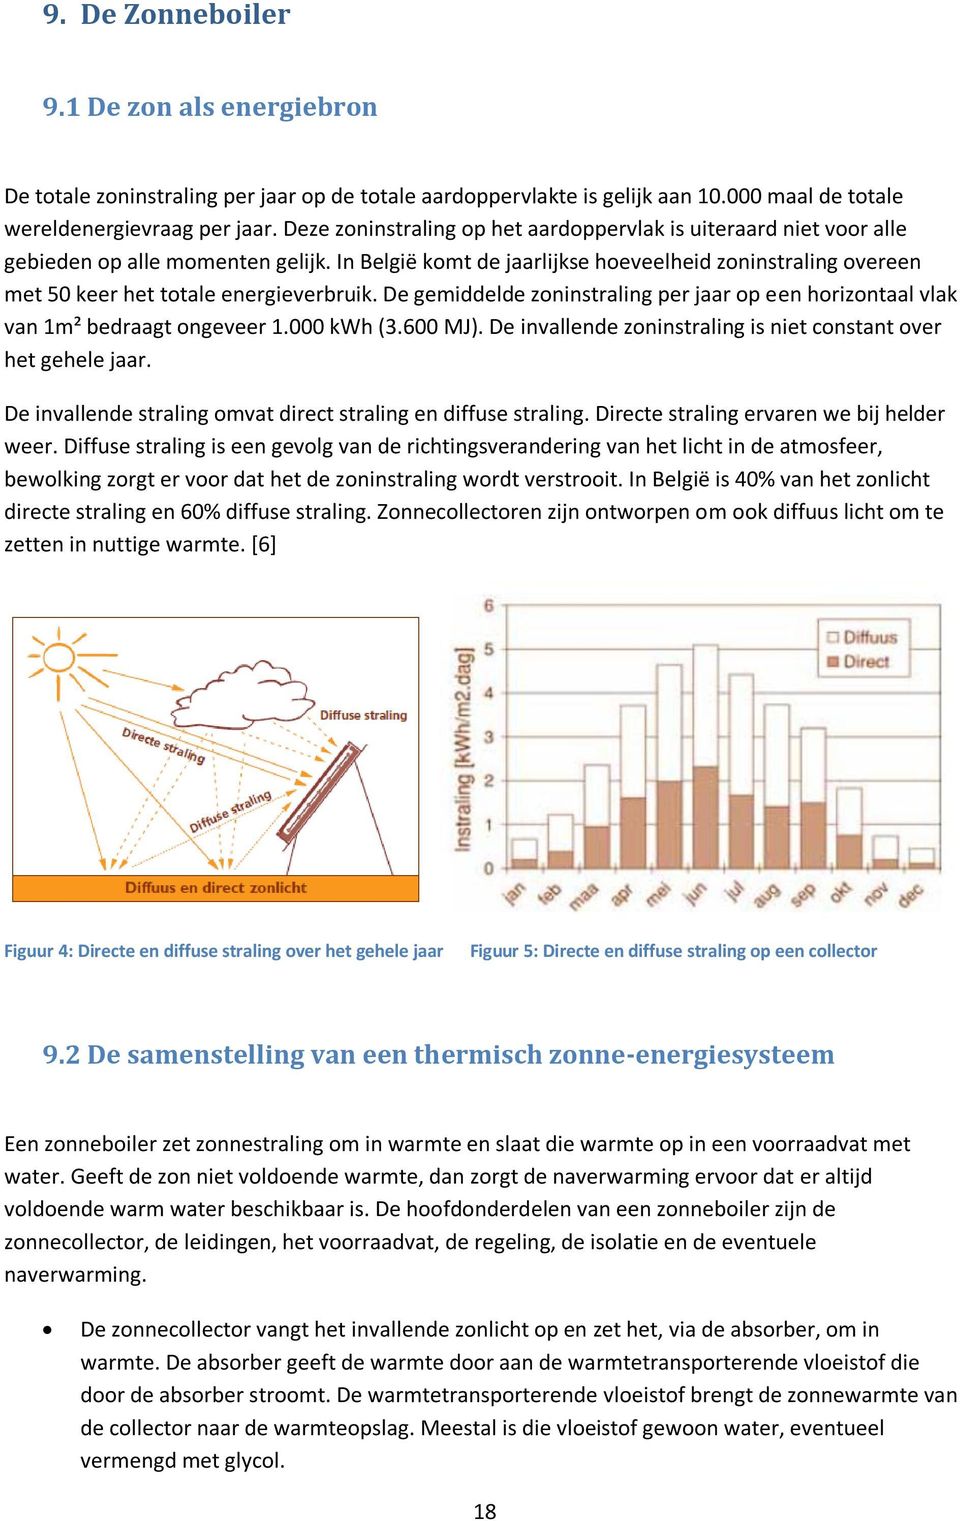 In België komt de jaarlijkse hoeveelheid zoninstraling overeen met 50 keer het totale energieverbruik. De gemiddelde zoninstraling per jaar op een horizontaal vlak van 1m² bedraagt ongeveer 1.